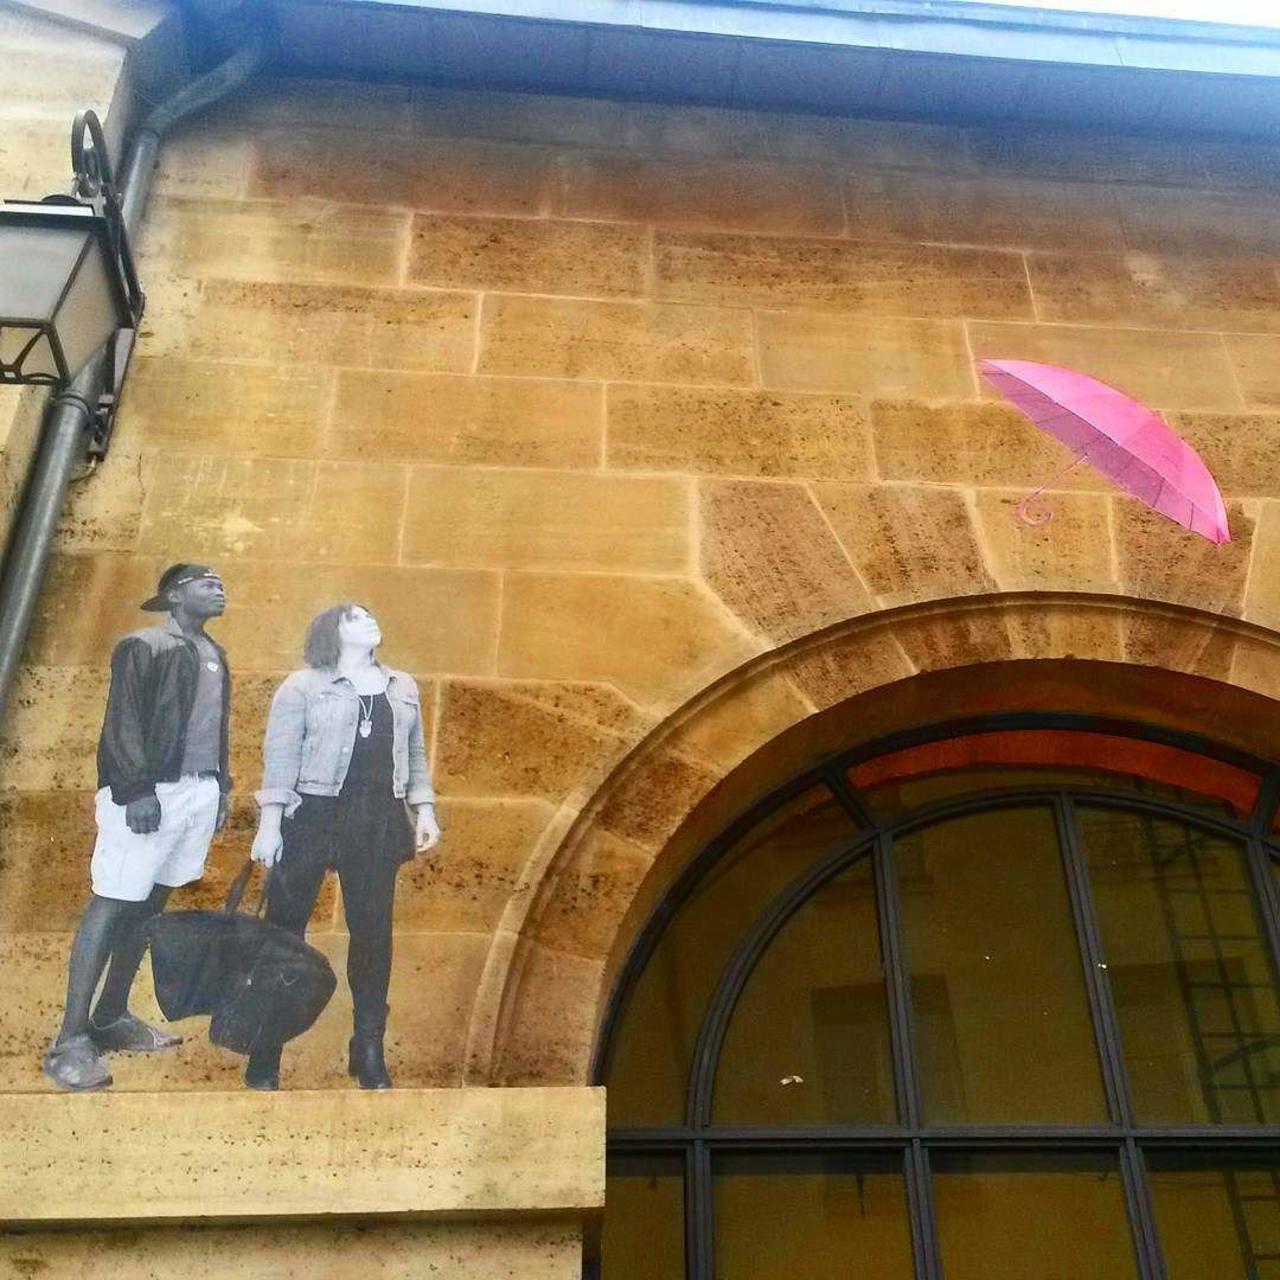 #Paris #graffiti photo by @princessepepett http://ift.tt/1Ptbh7g #StreetArt https://t.co/ld0NzcaN8p